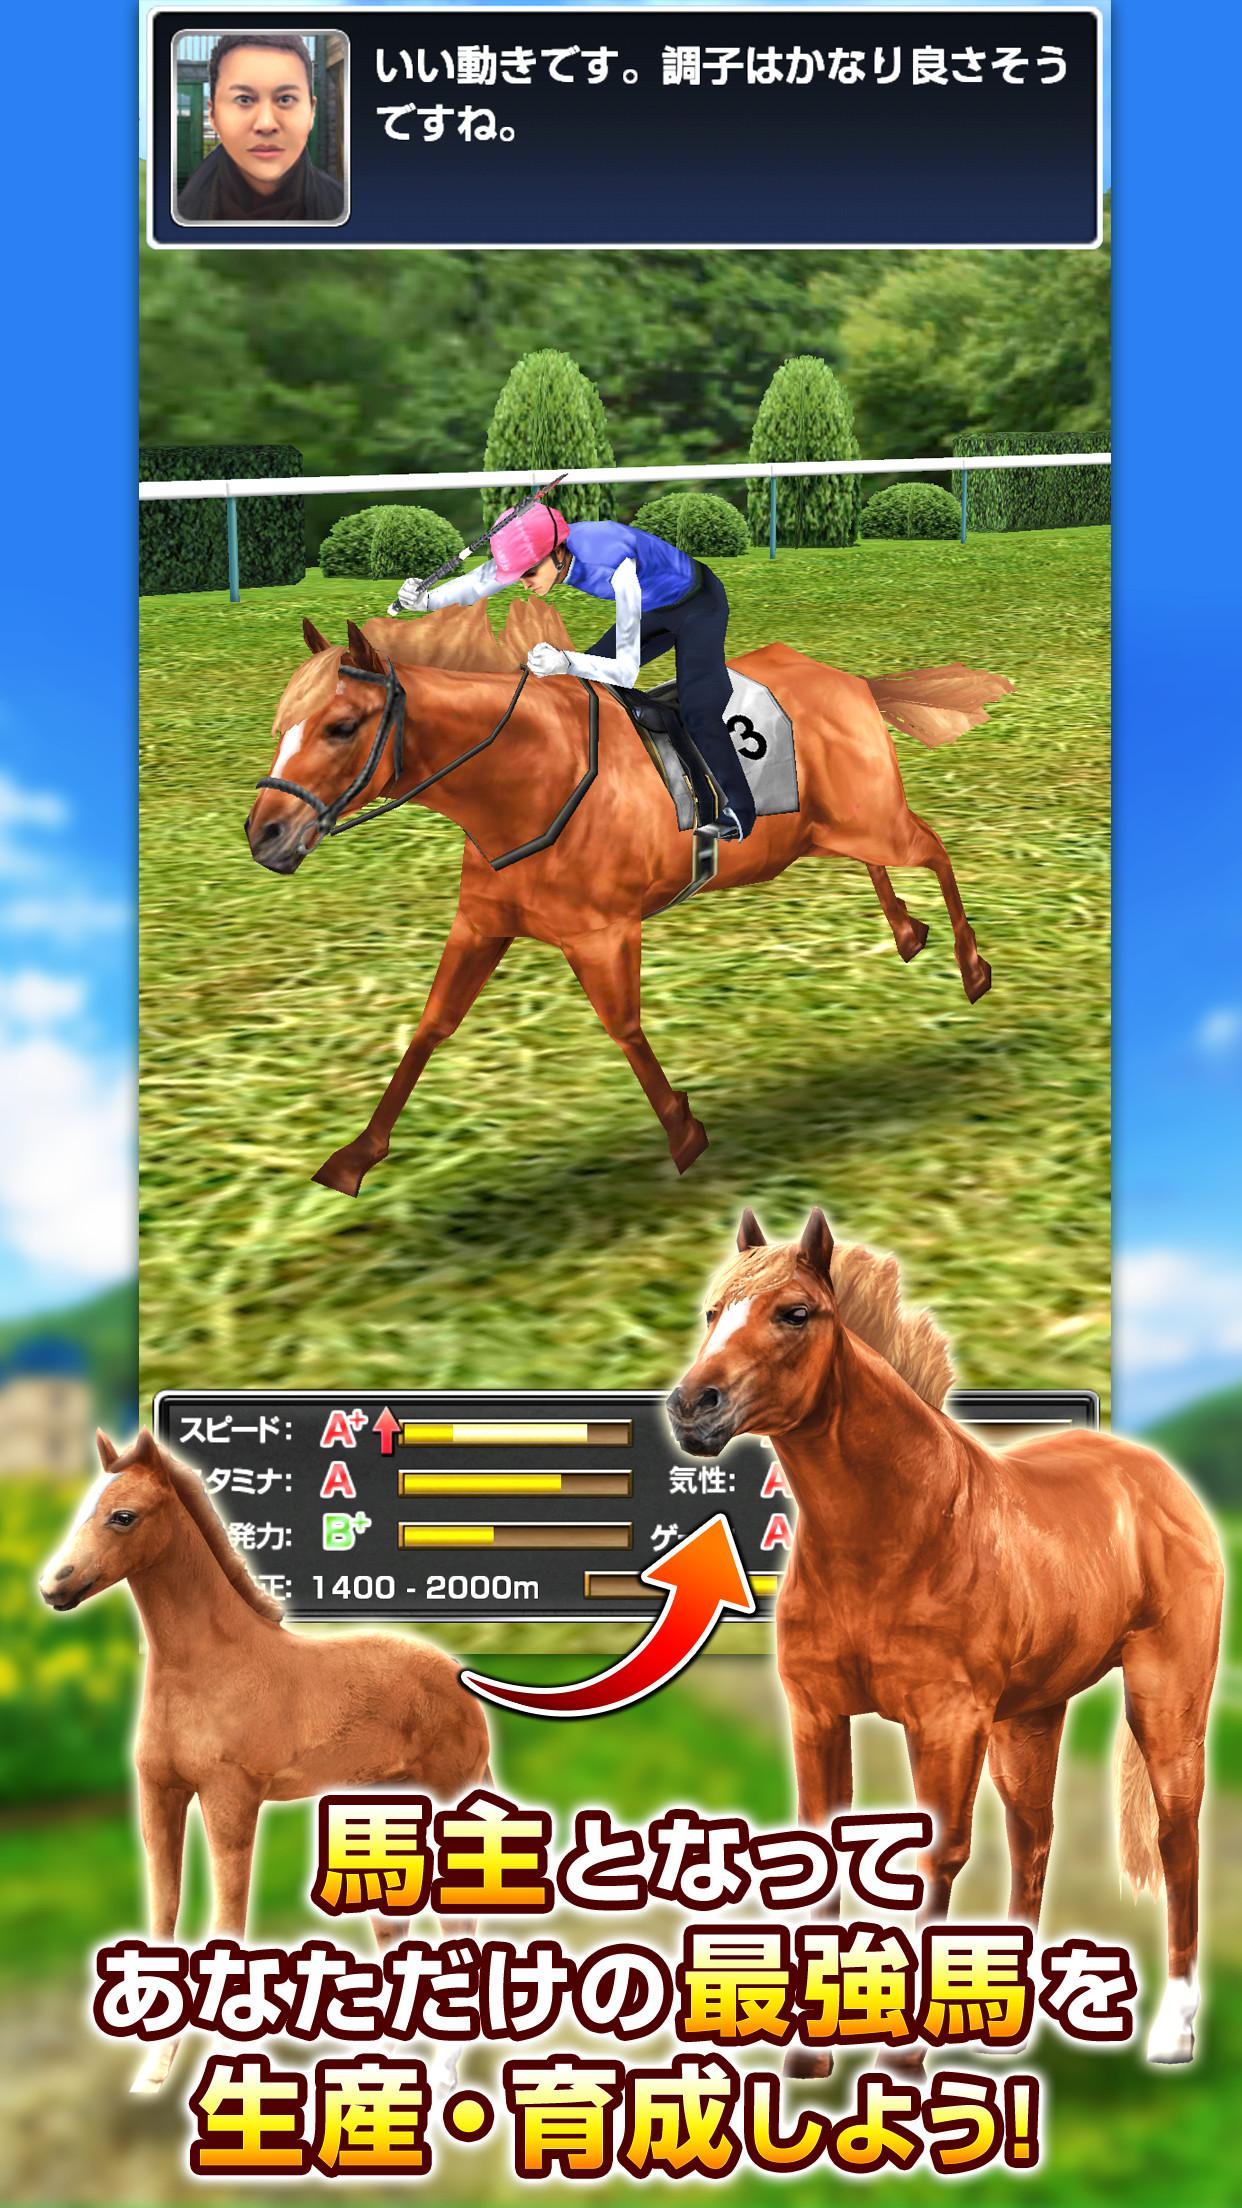 Android application ダービーインパクト [競馬ゲーム・育成シミュレーション] screenshort